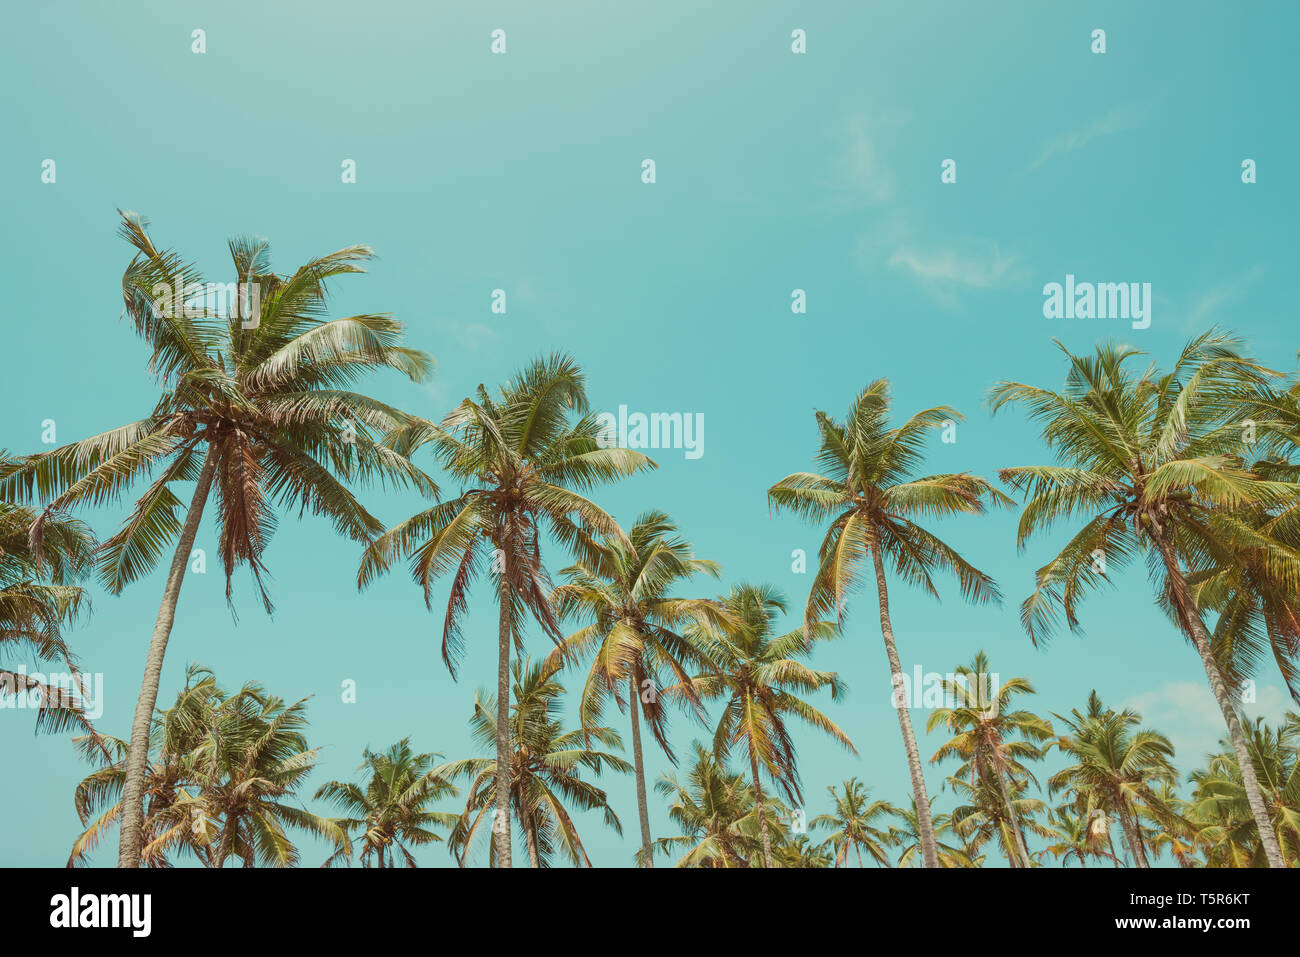 Palmiers sur la plage avec un ciel clair aux tons vintage Banque D'Images